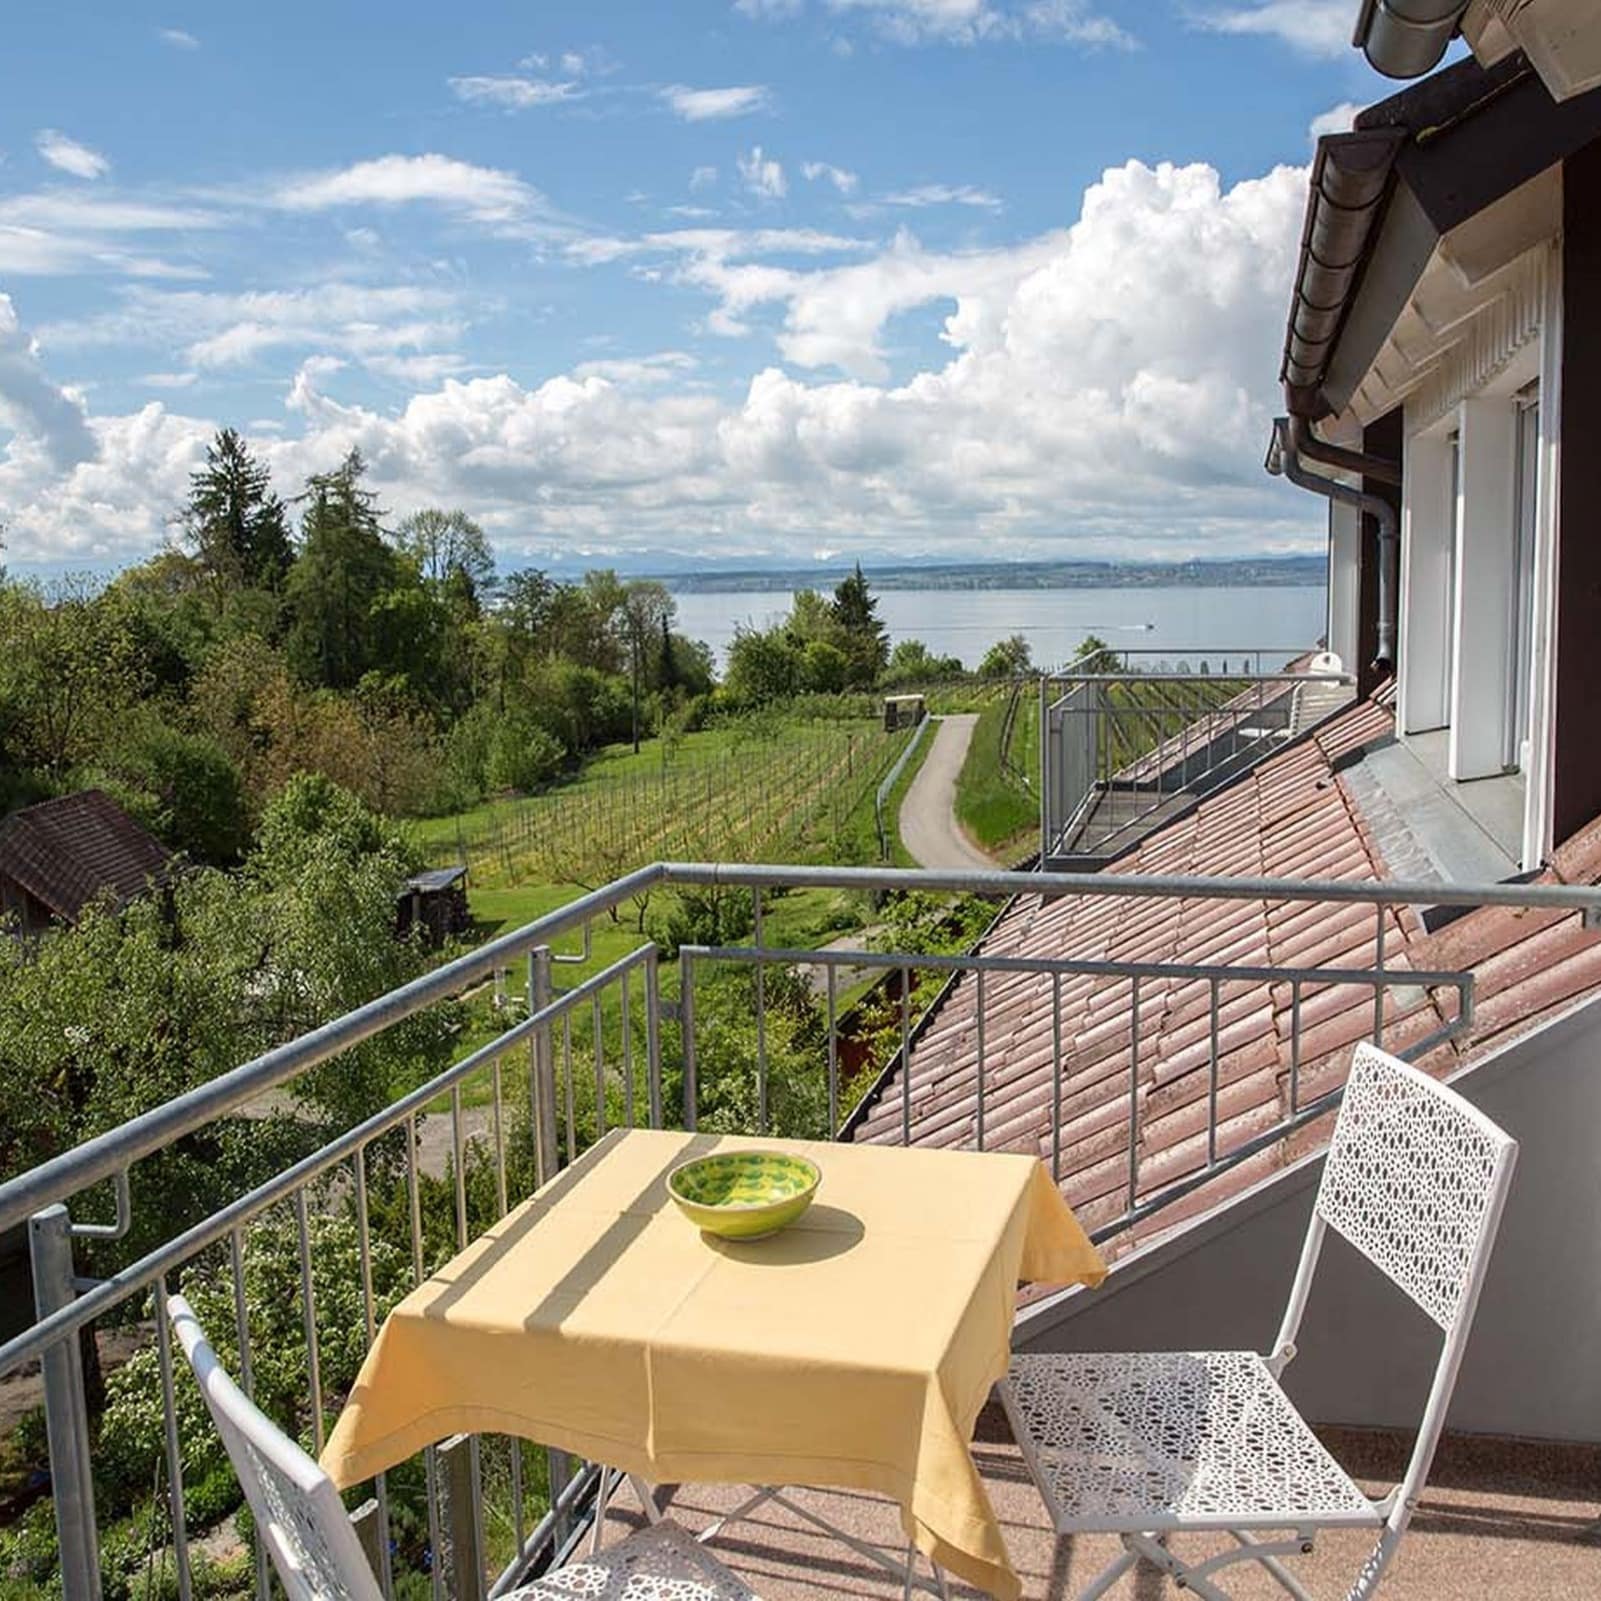 Blick vom Balkon einer Ferienwohnung in Meersburg inmitten von Weinreben und Aussicht auf den Bodensee